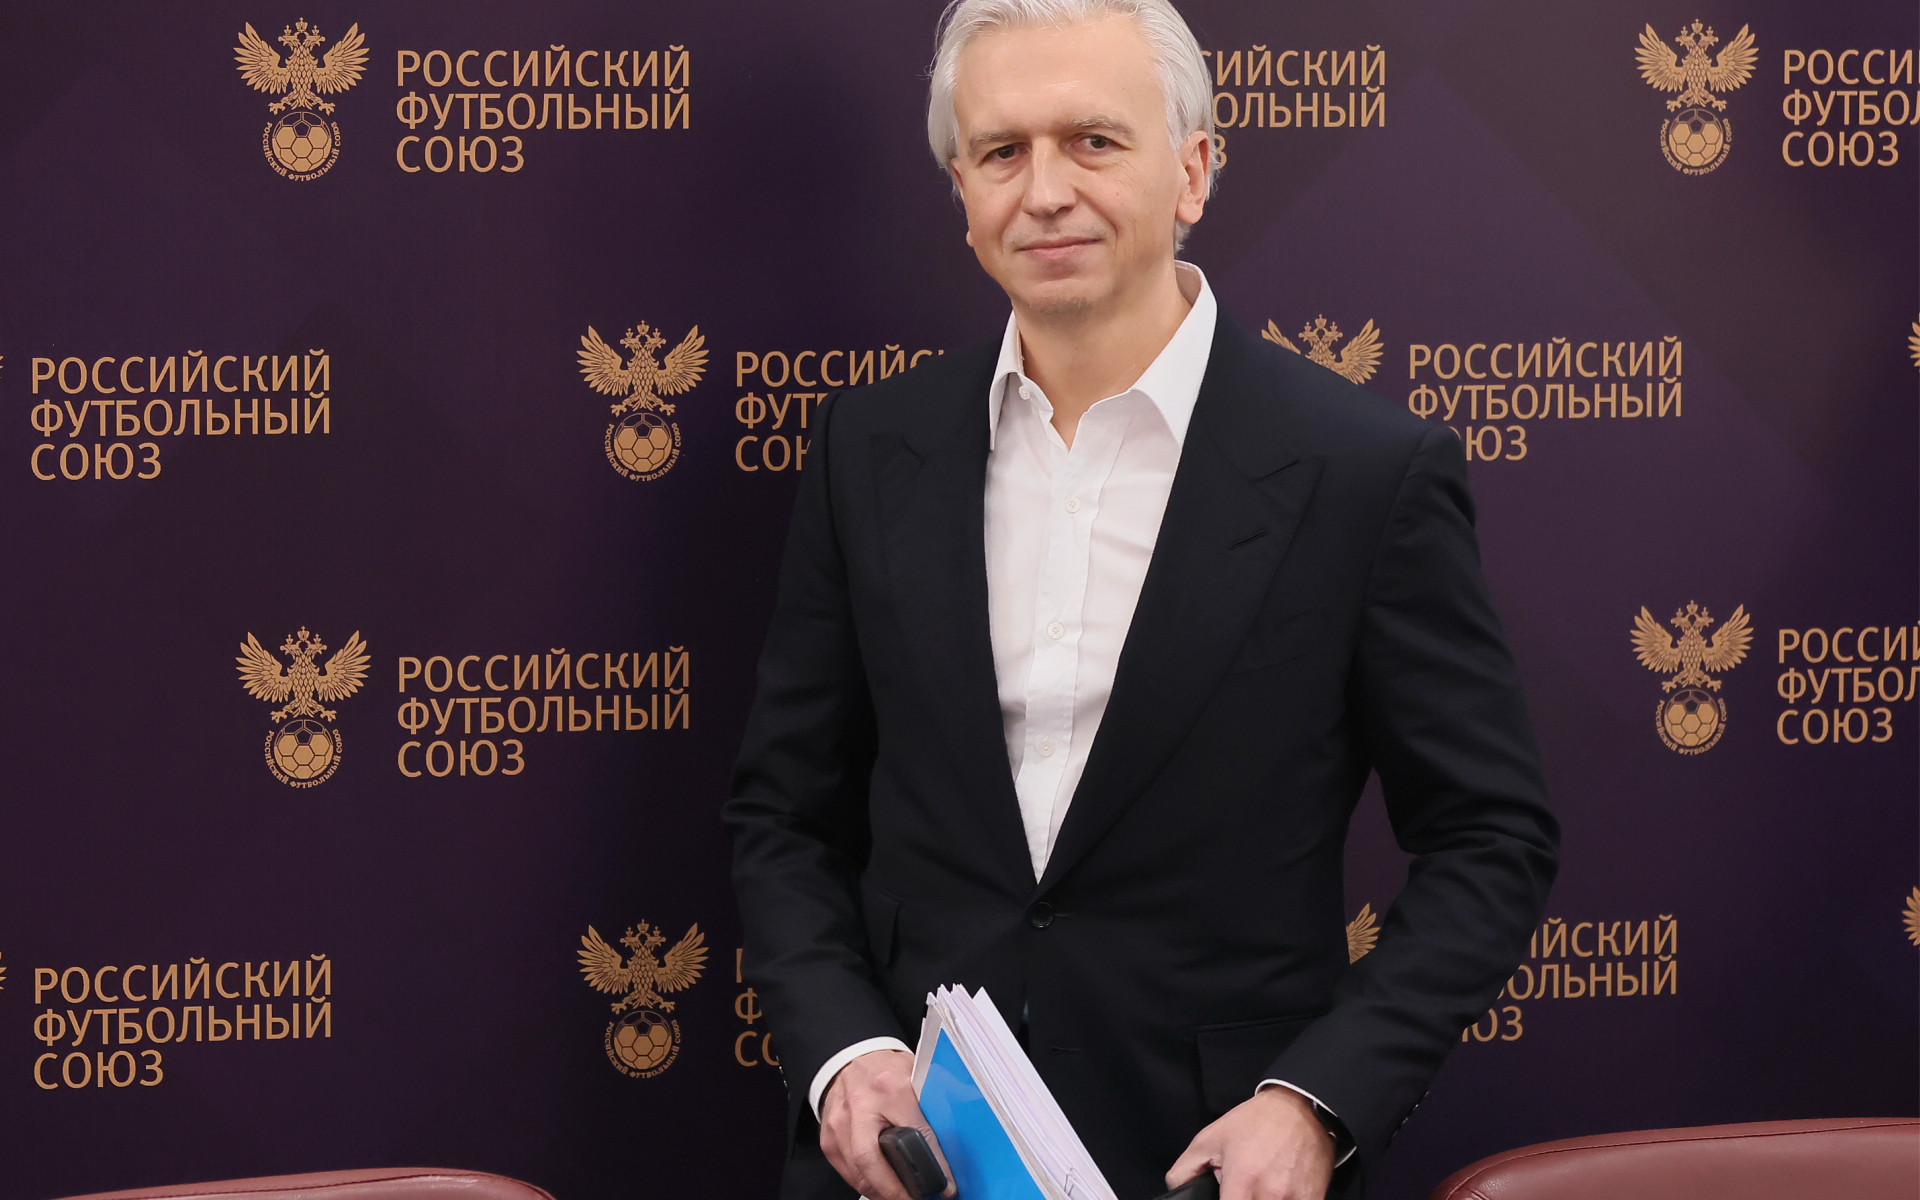 Дюков – о симпатии к «Зениту»: я президент РФС и равноудалён от всех клубов